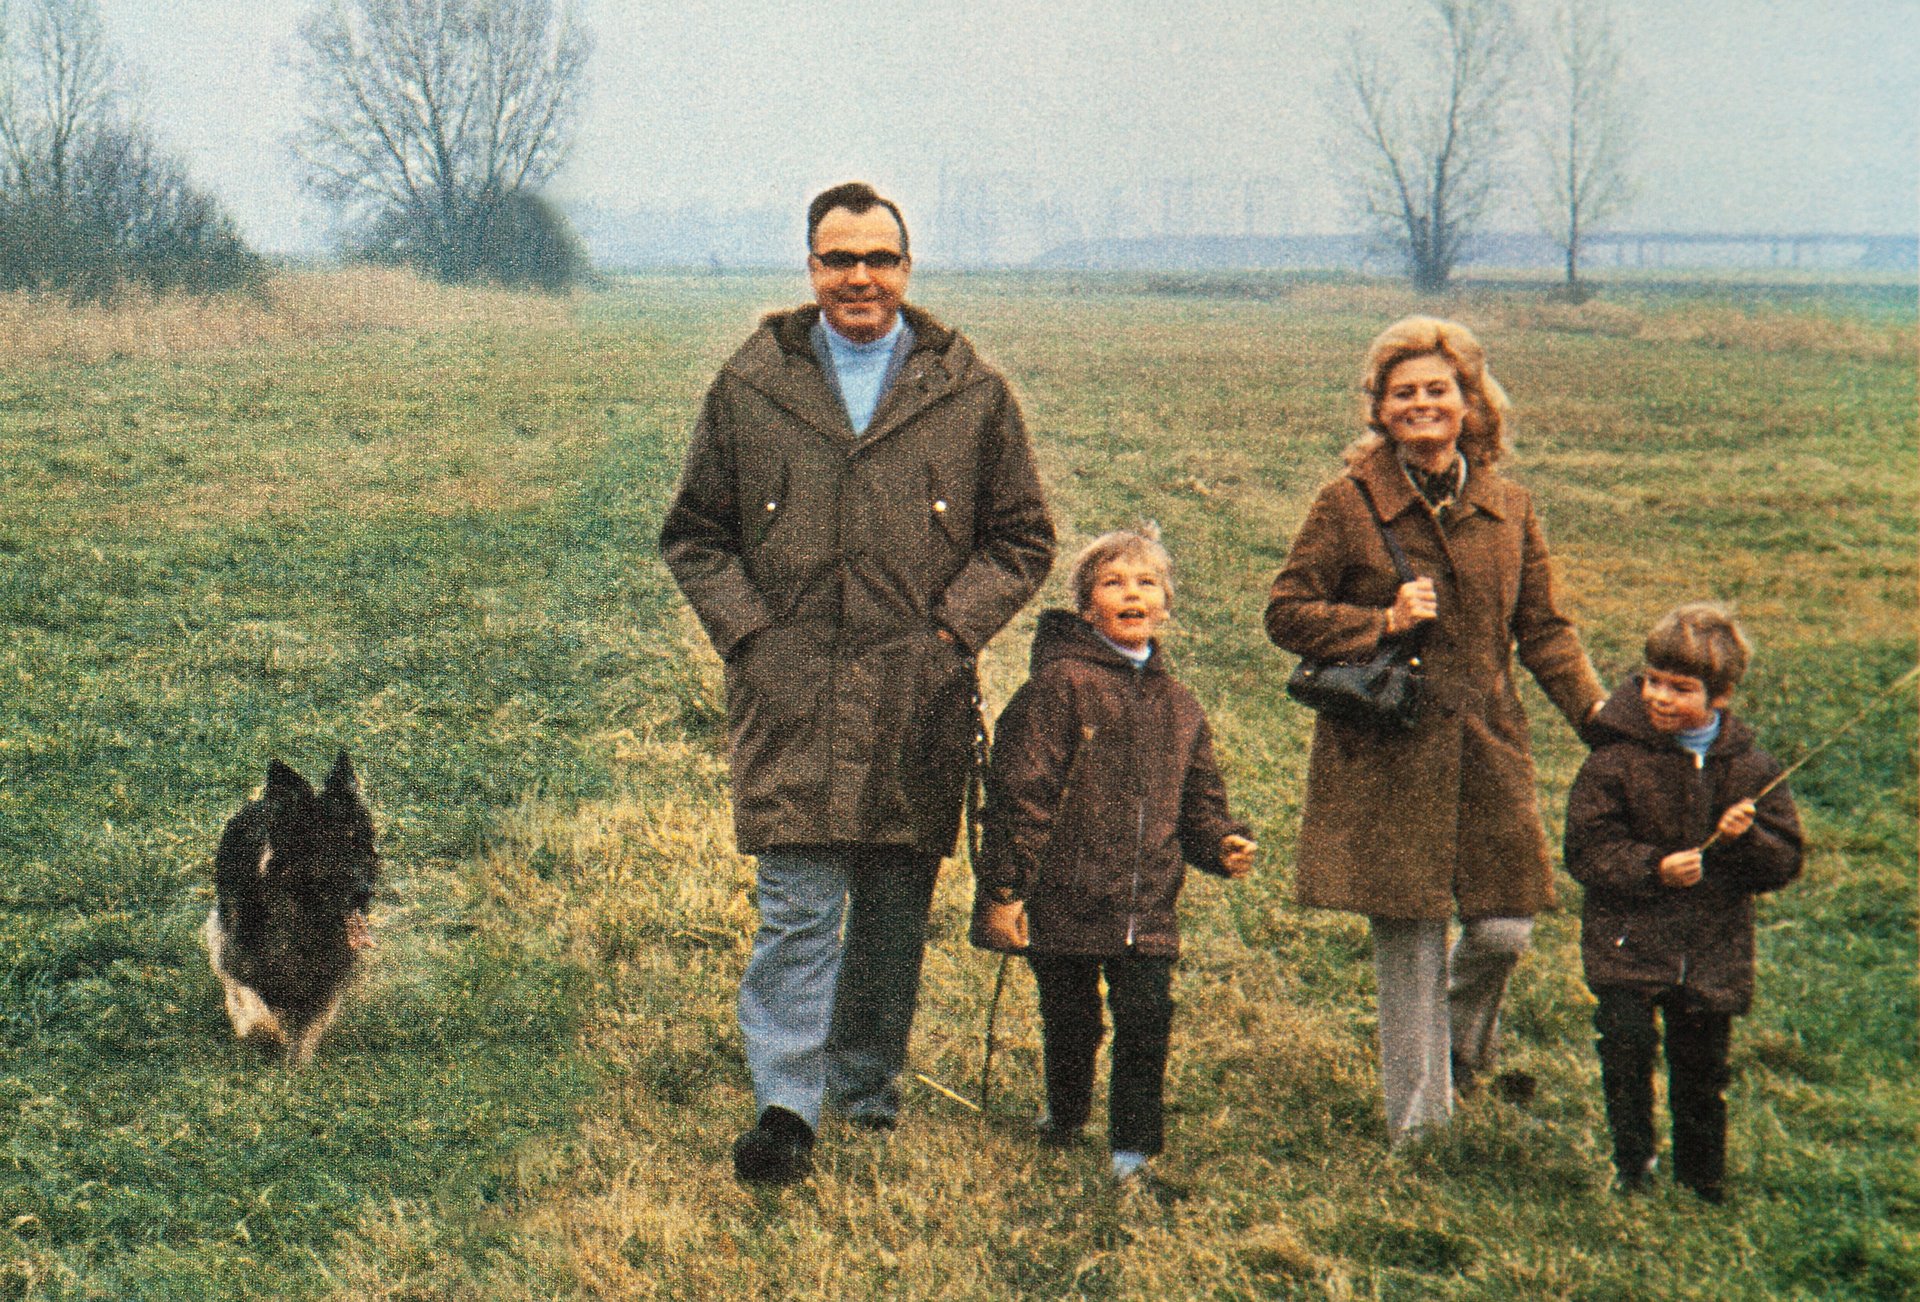 Herr und Frau Kohl gehen mit ihren zwei Kindern auf einer Wiese spazieren